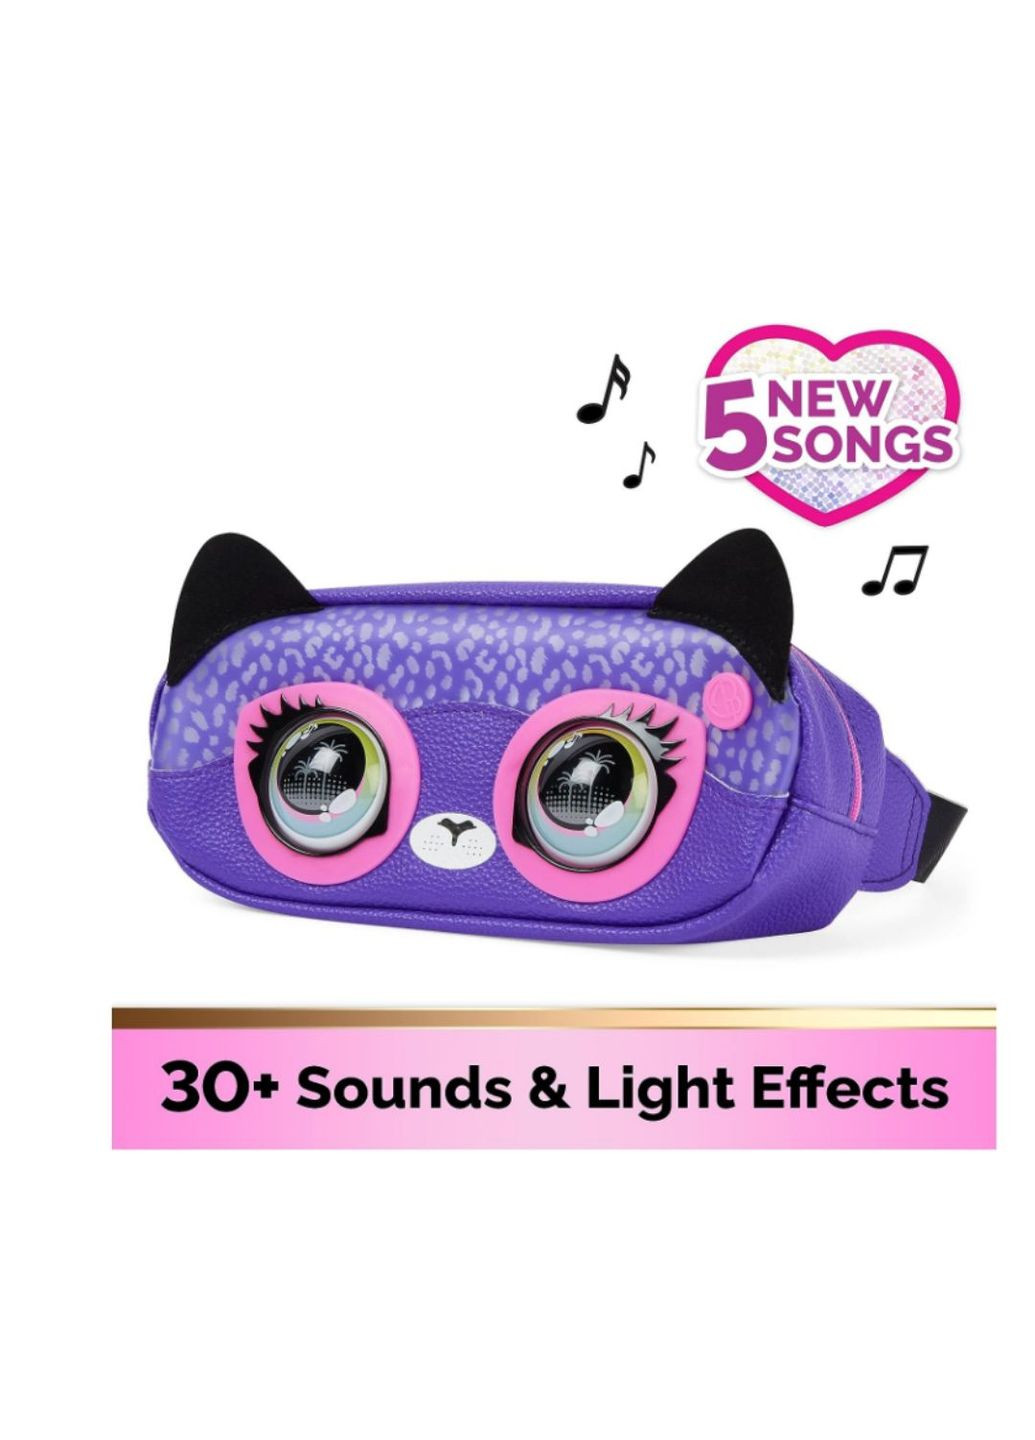 Интерактивная поясная сумочка Savannah Spotlight от Purse Pets для девочек, более 30 эффектов, от 5 л Spin Master (280898764)